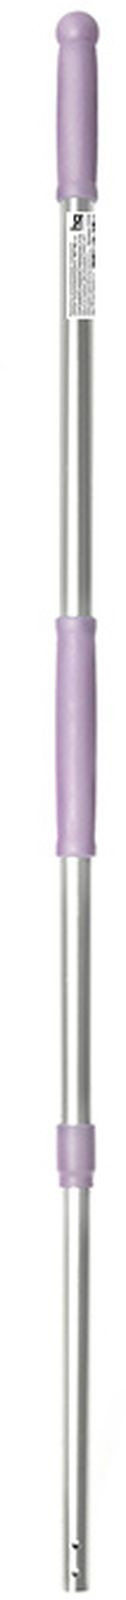 фото Рукоятка для швабры HQ Profiline, фиолетовый, телескопическая, защелкивающаяся, 100-180 см Hqprpfiline